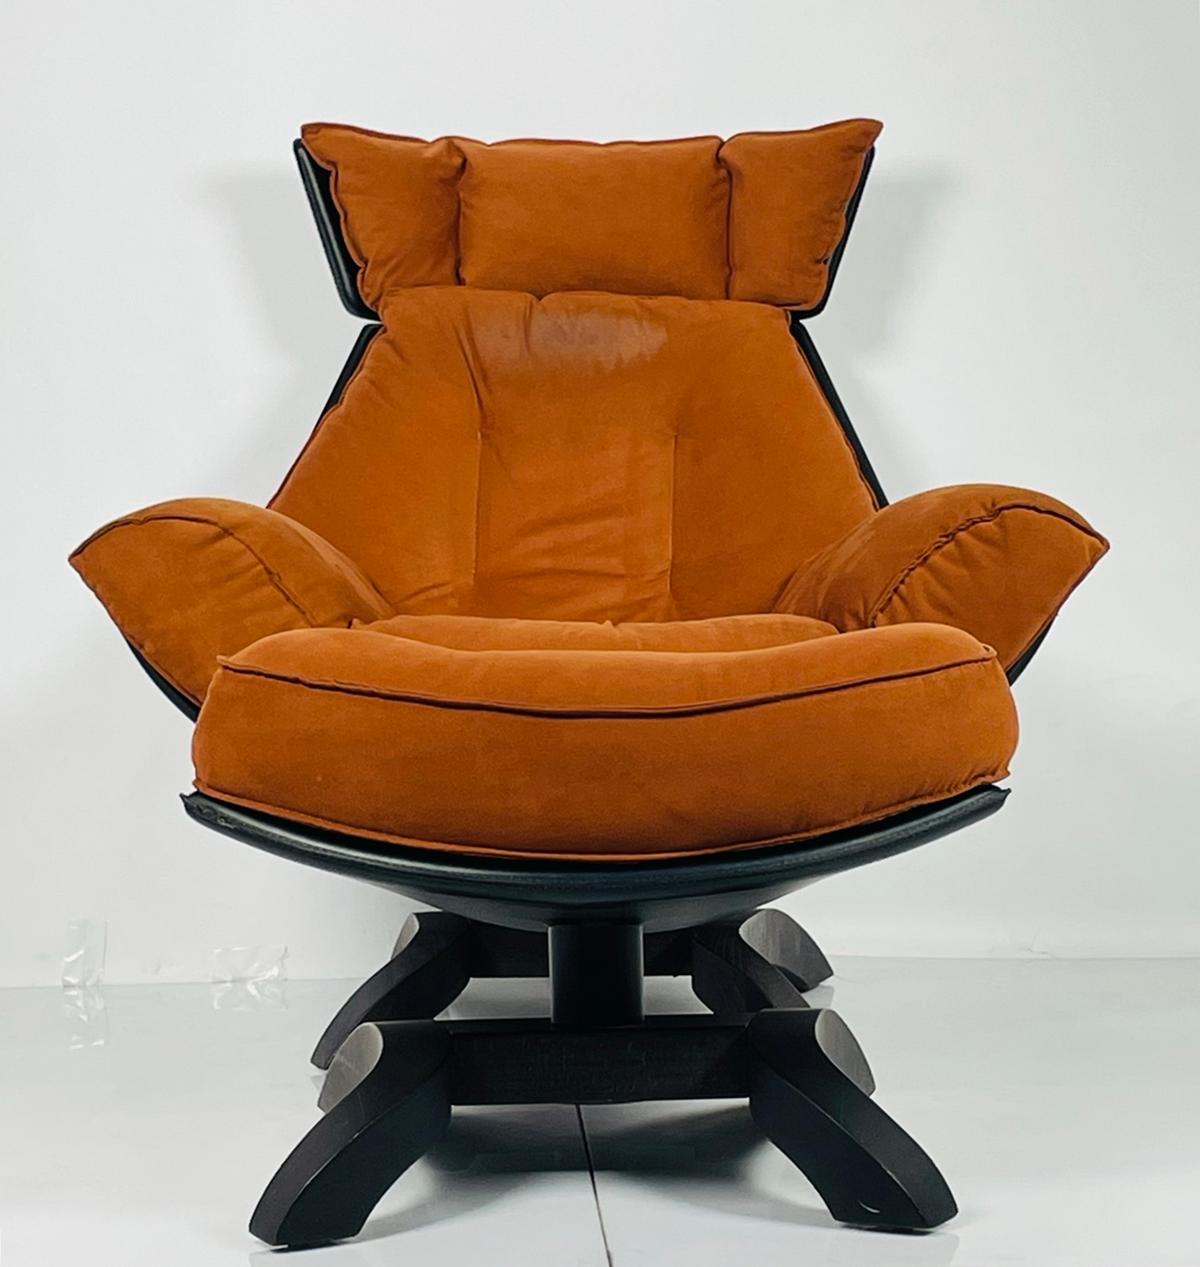 Voici l'exquise chaise et l'ottoman Vintage fabriqués en Italie par le célèbre designer Giorgio Saporiti. Cet ensemble de meubles luxueux respire la sophistication et l'élégance intemporelle, ce qui en fait le complément idéal de tout intérieur